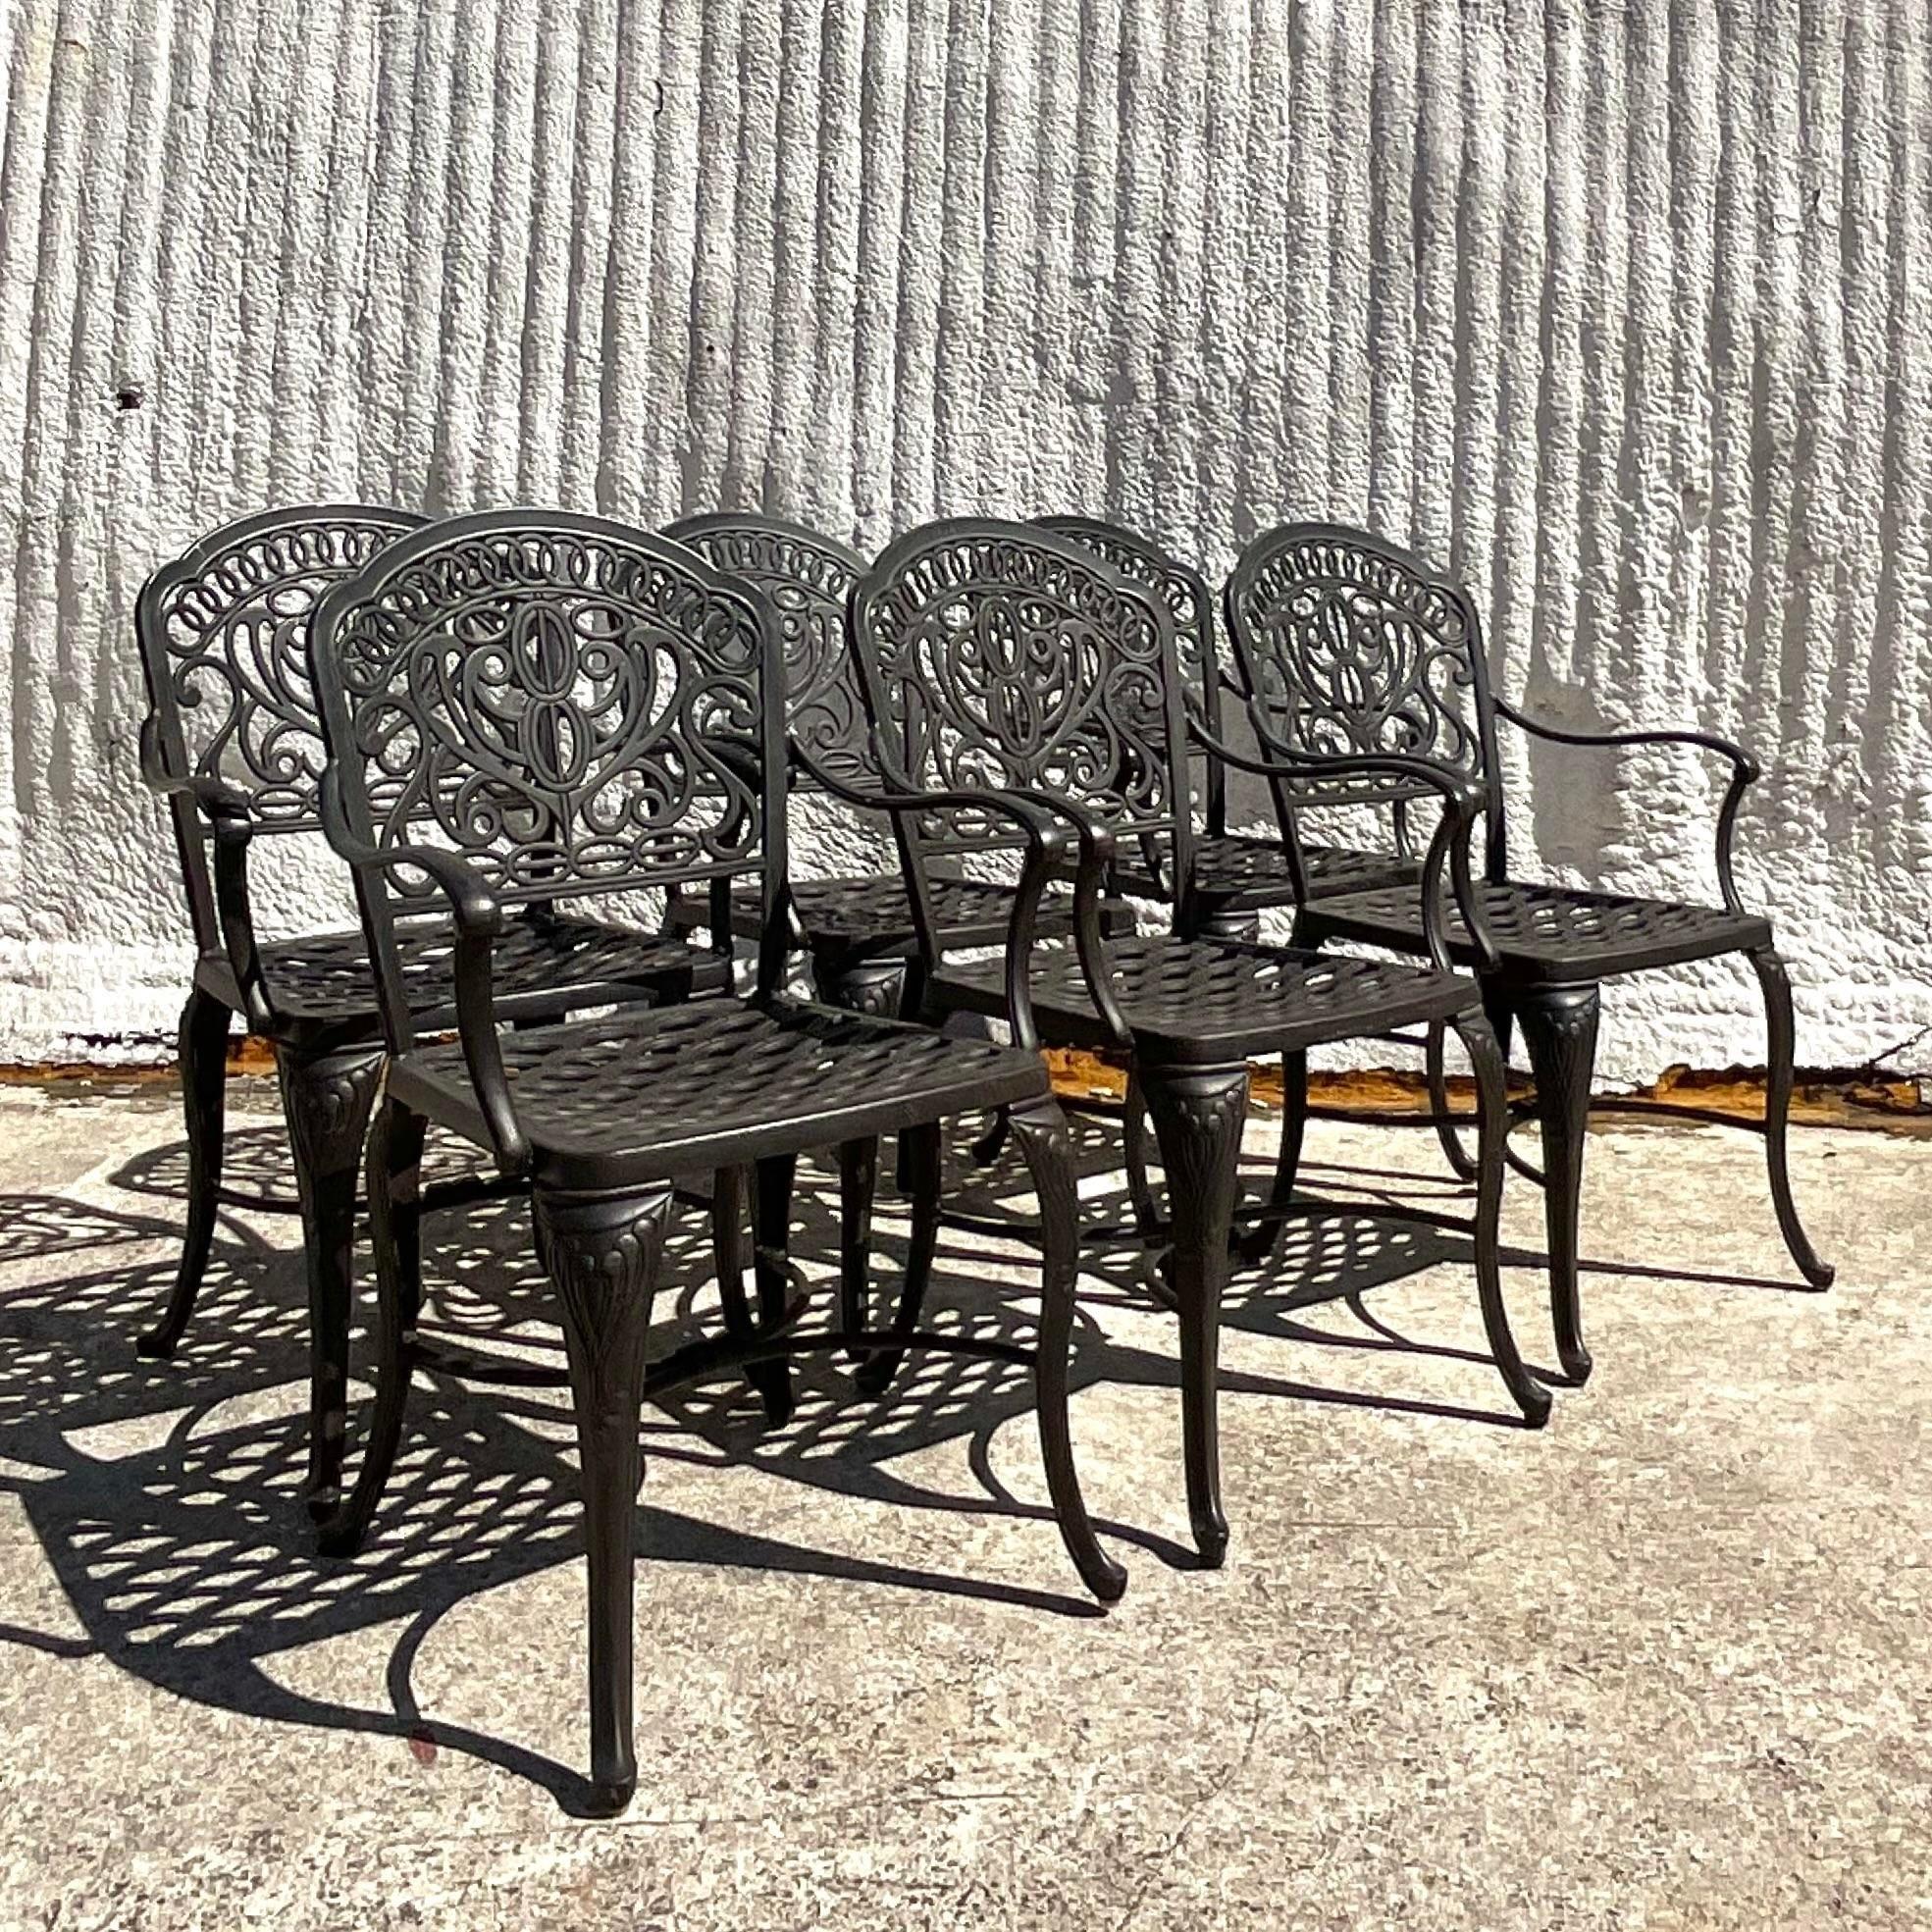 Un fabuleux ensemble de six chaises de salle à manger vintage Coastal pour l'extérieur. Fabriqué par le groupe emblématique Hanamint et étiqueté sur le fond. Cadre chic en aluminium moulé dans un fabuleux design en forme de boucle. Table de salle à